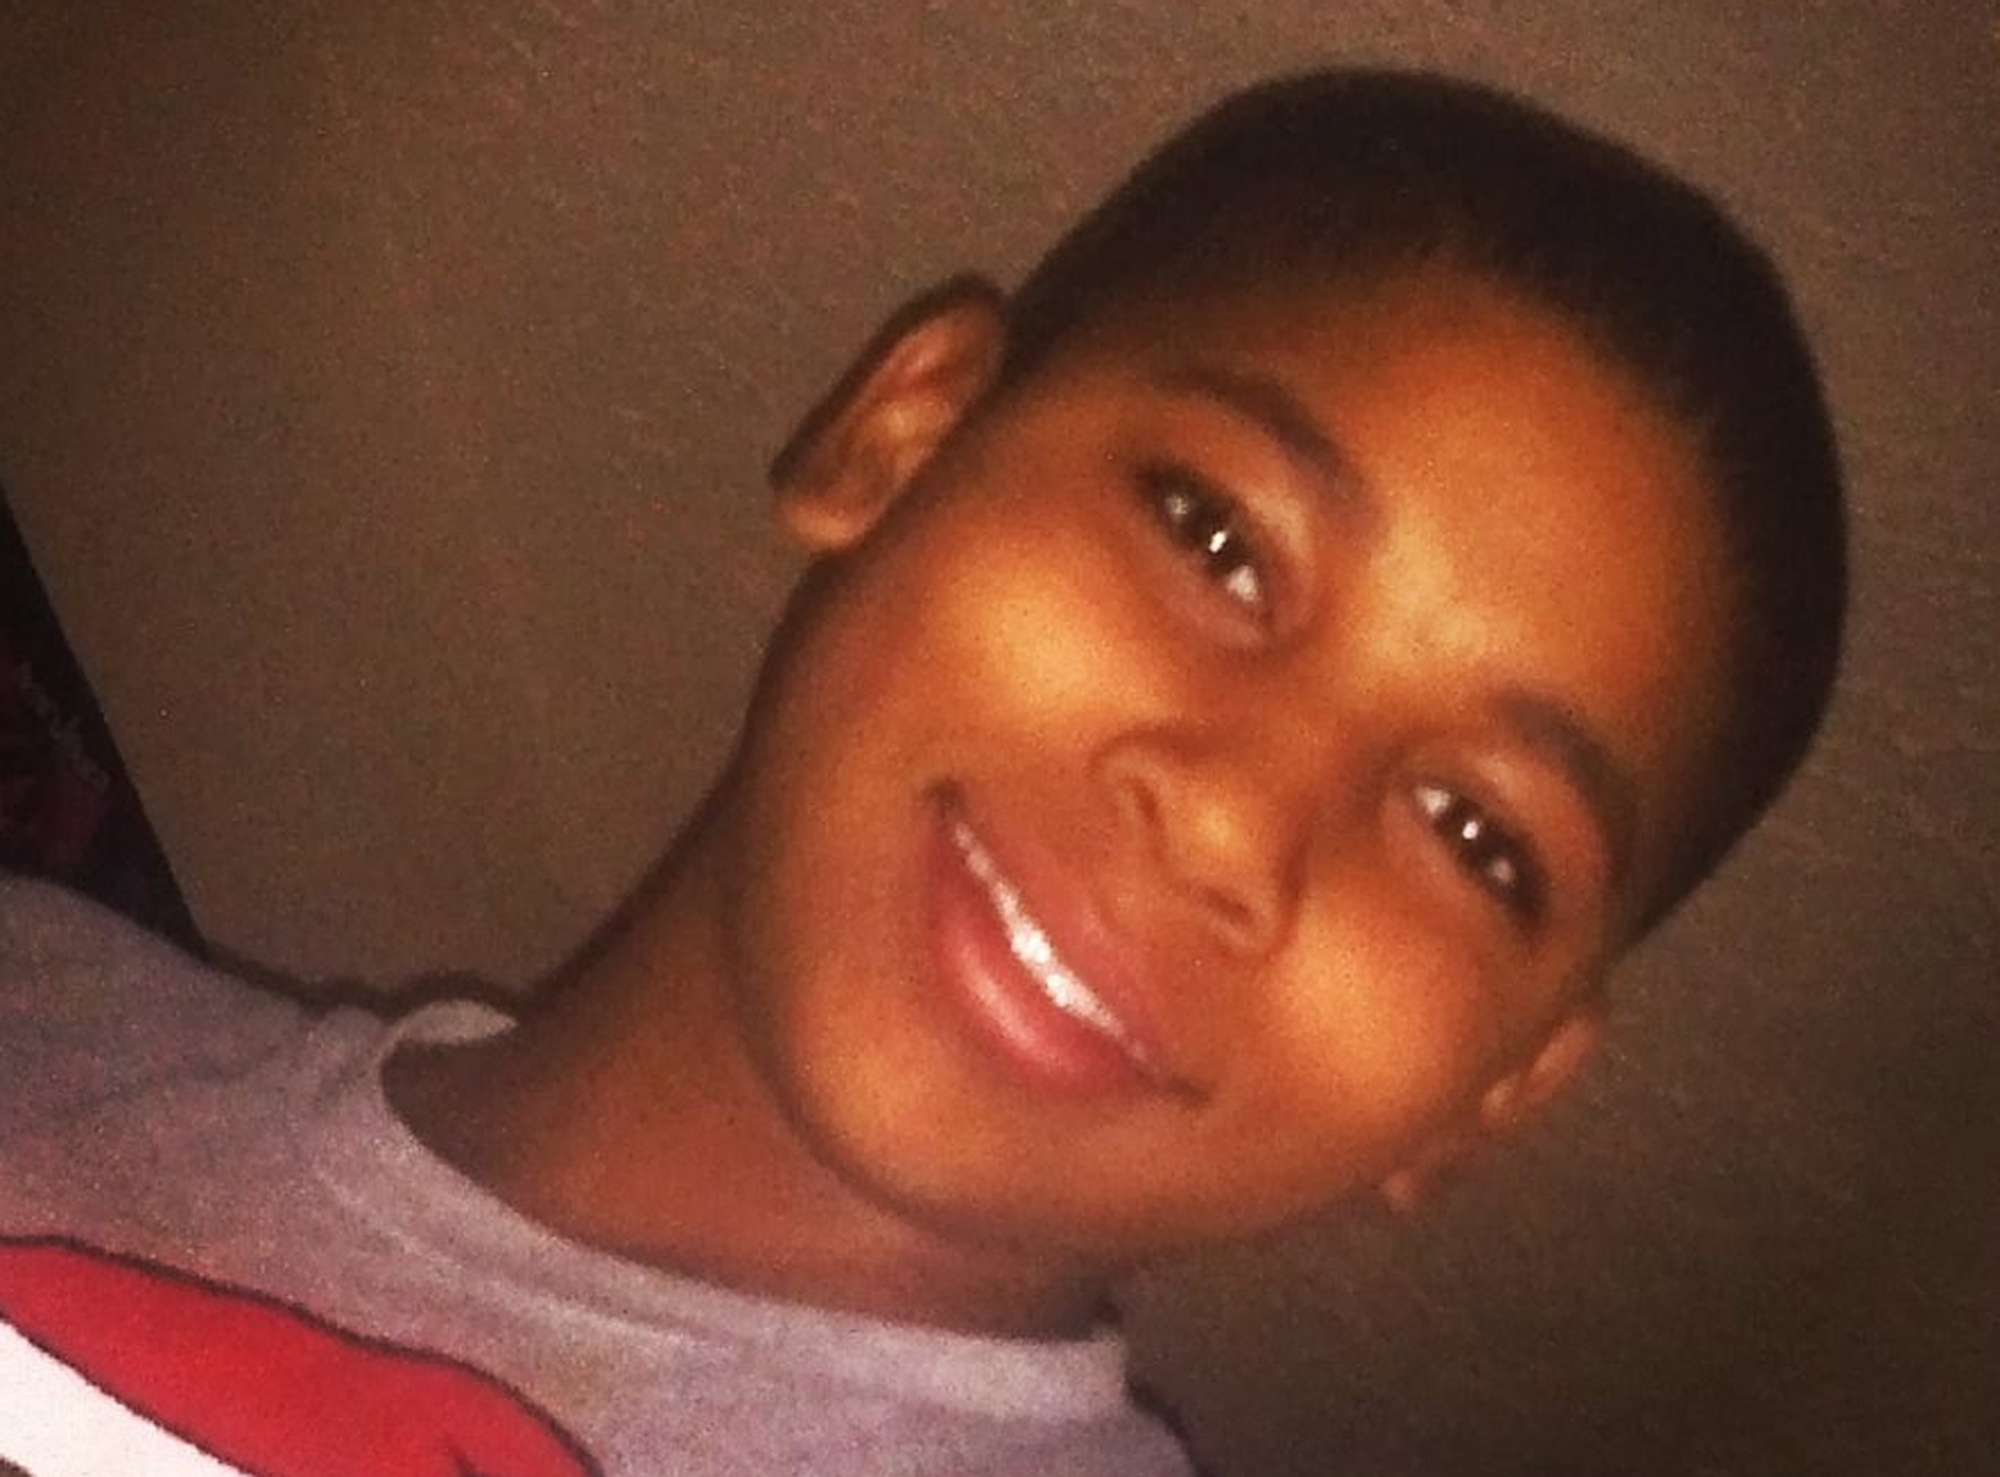 “Justificado”, tiroteo contra niño negro en Cleveland